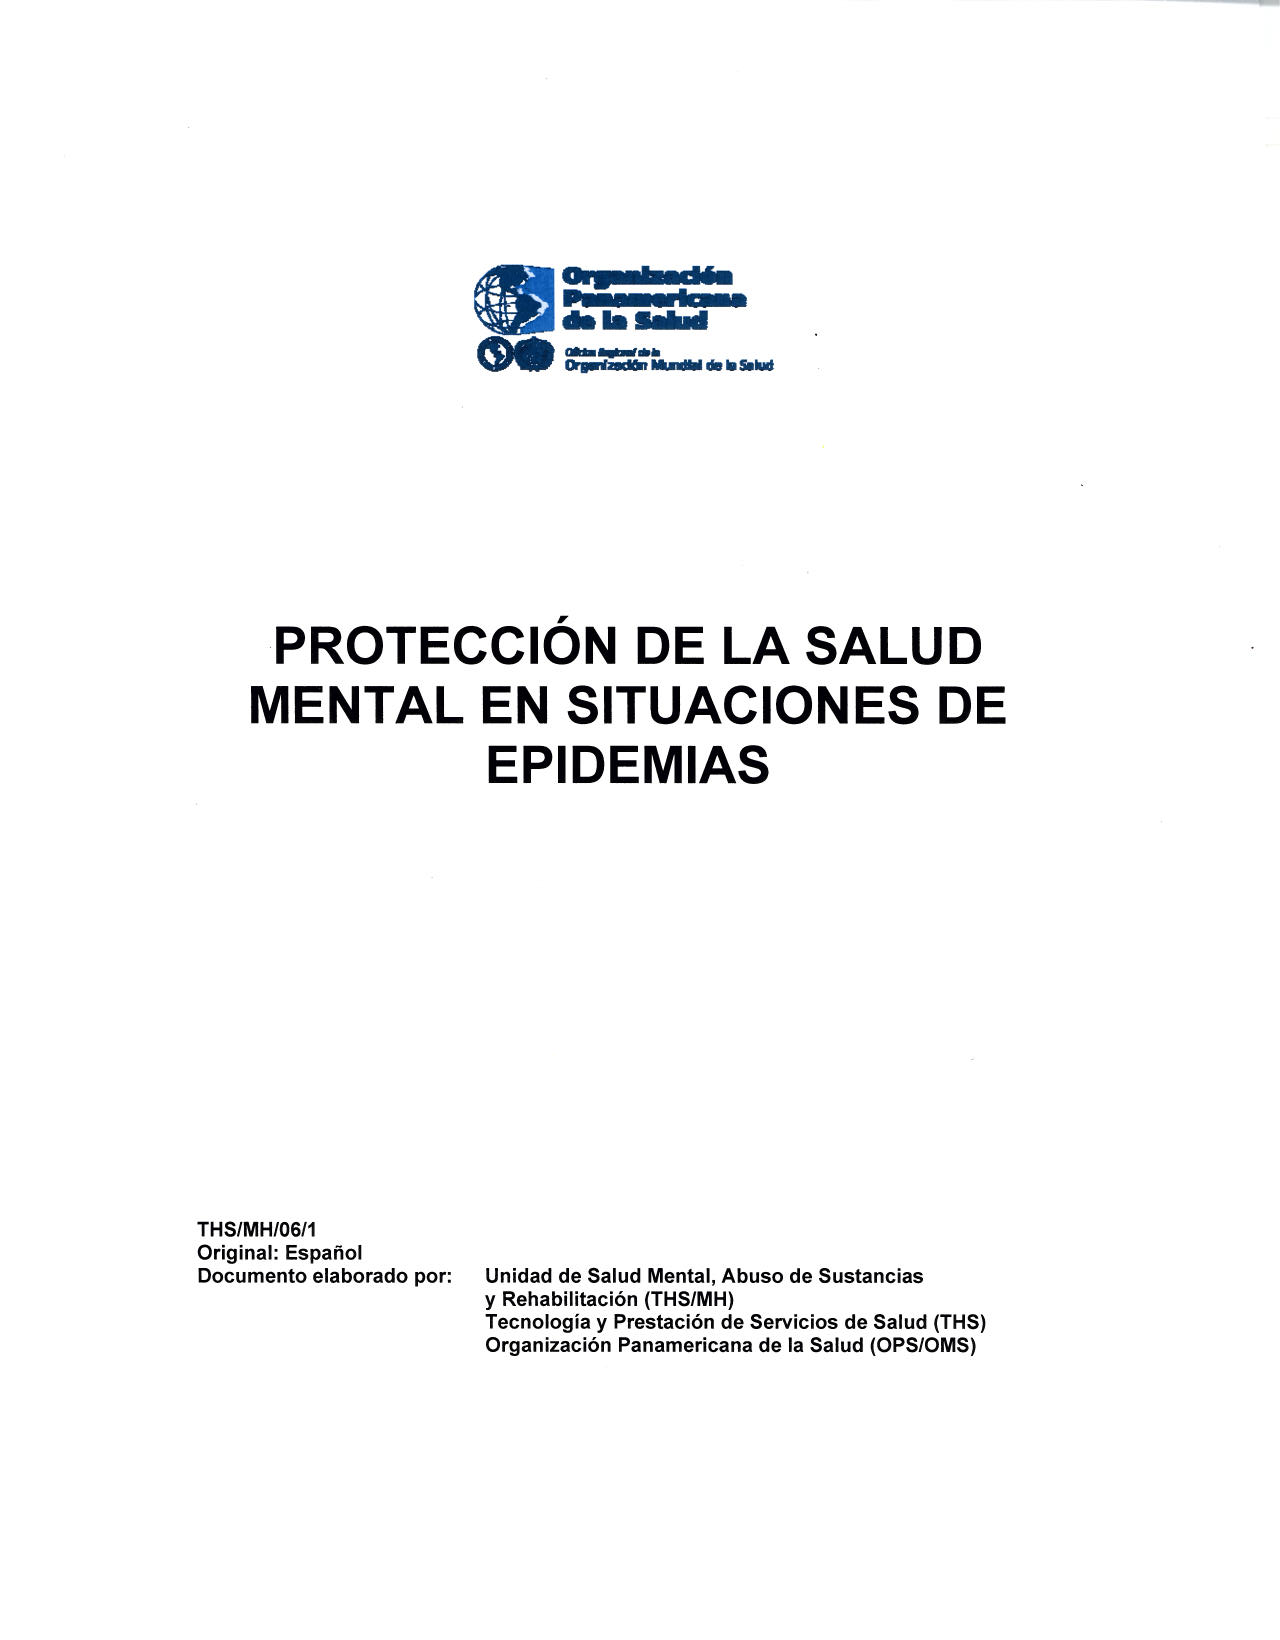 Protección de la salud mental en situaciones de epidemias, OPS, 2006